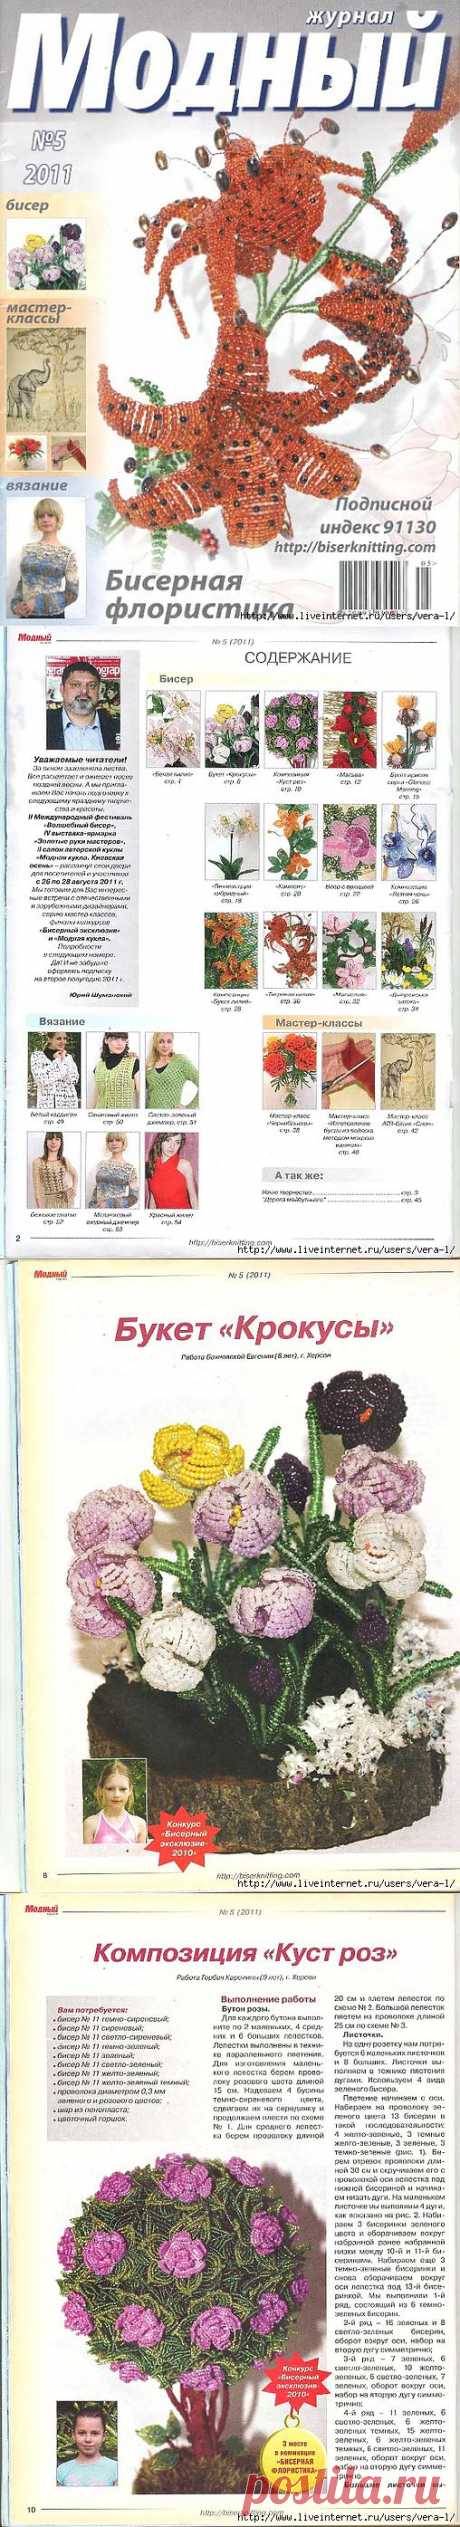 Модный журнал. Бисер 2011-5(60).